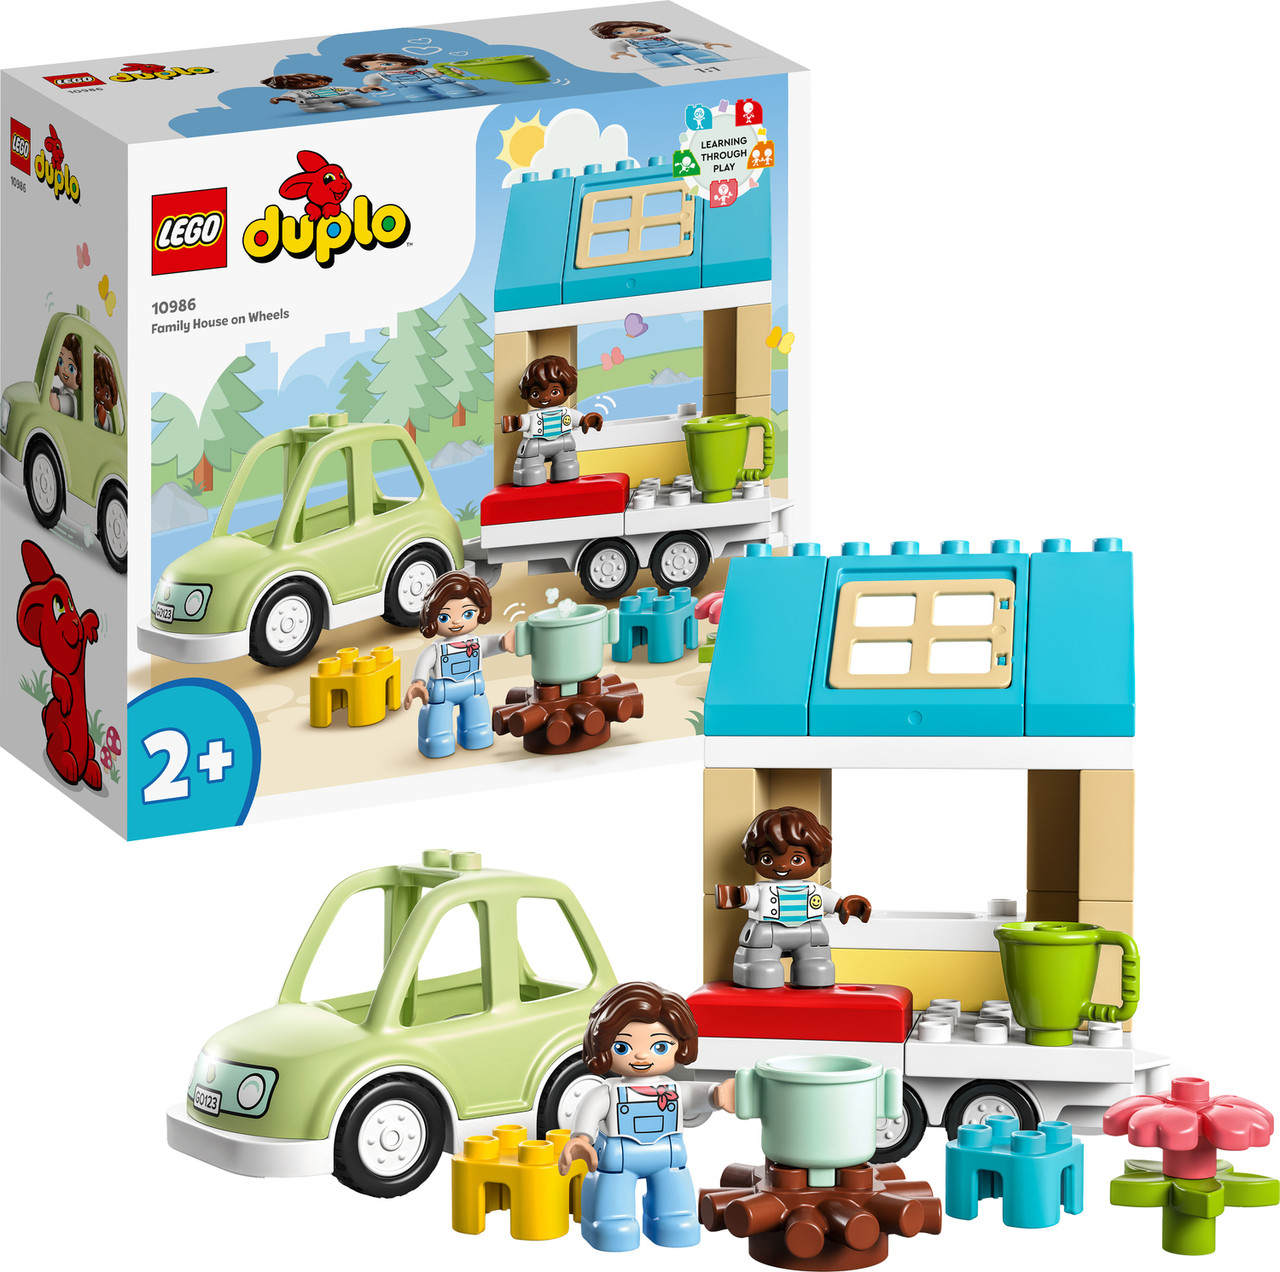 LEGO® DUPLO: Town Family House on Wheels 2